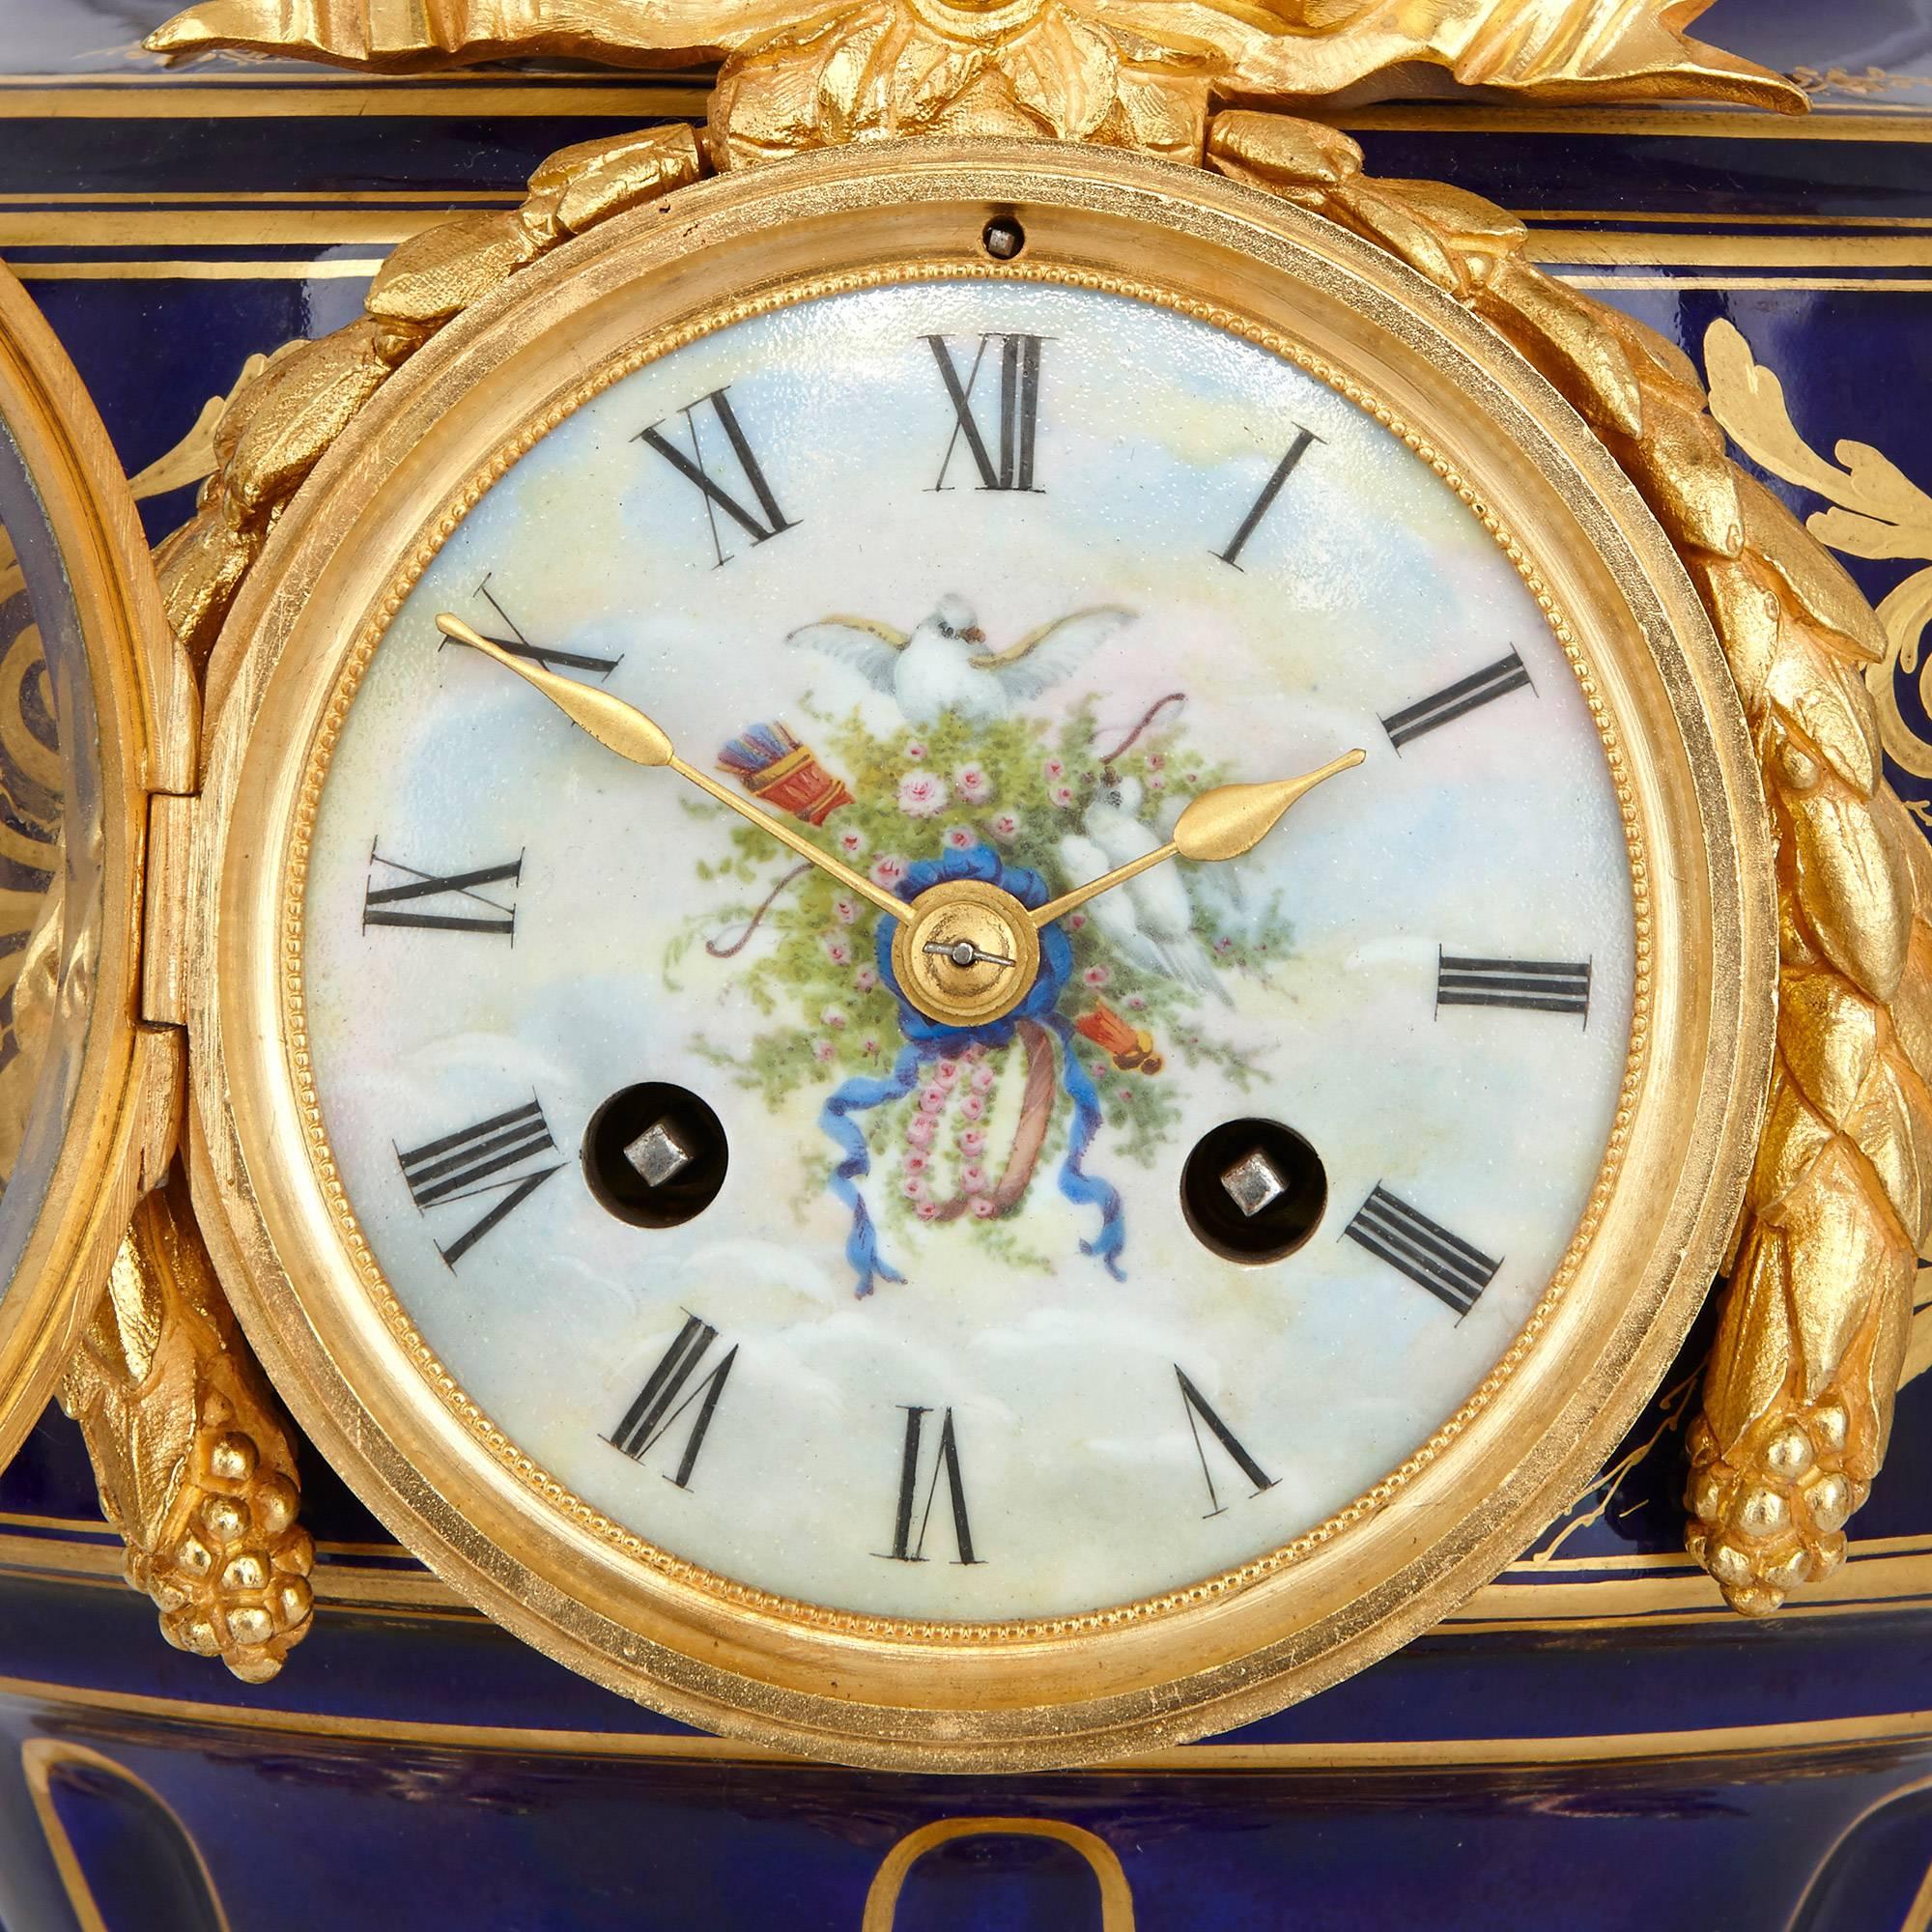 Diese fantastische Uhrengarnitur ist ein wirklich außergewöhnliches Designstück, das die elegante Schönheit der Arbeiten der Porzellanmanufaktur von Sèvres aufgreift. Die ungewöhnliche Garnitur, die aus drei wunderschön verzierten Vasen besteht, ist